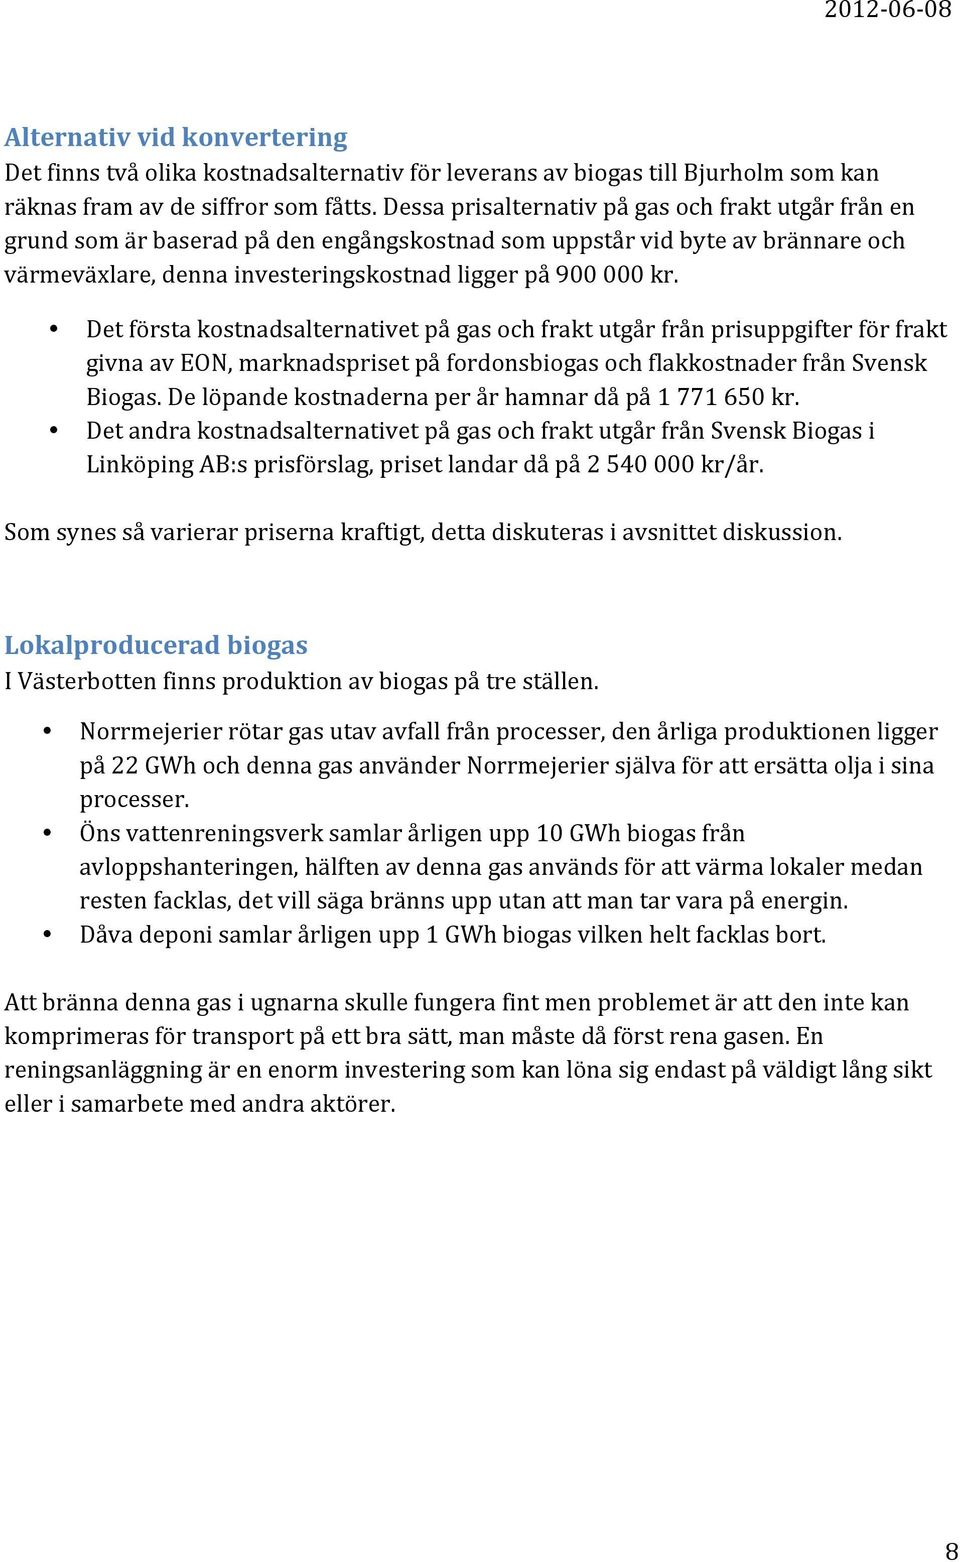 Det första kostnadsalternativet på gas och frakt utgår från prisuppgifter för frakt givna av EON, marknadspriset på fordonsbiogas och flakkostnader från Svensk Biogas.